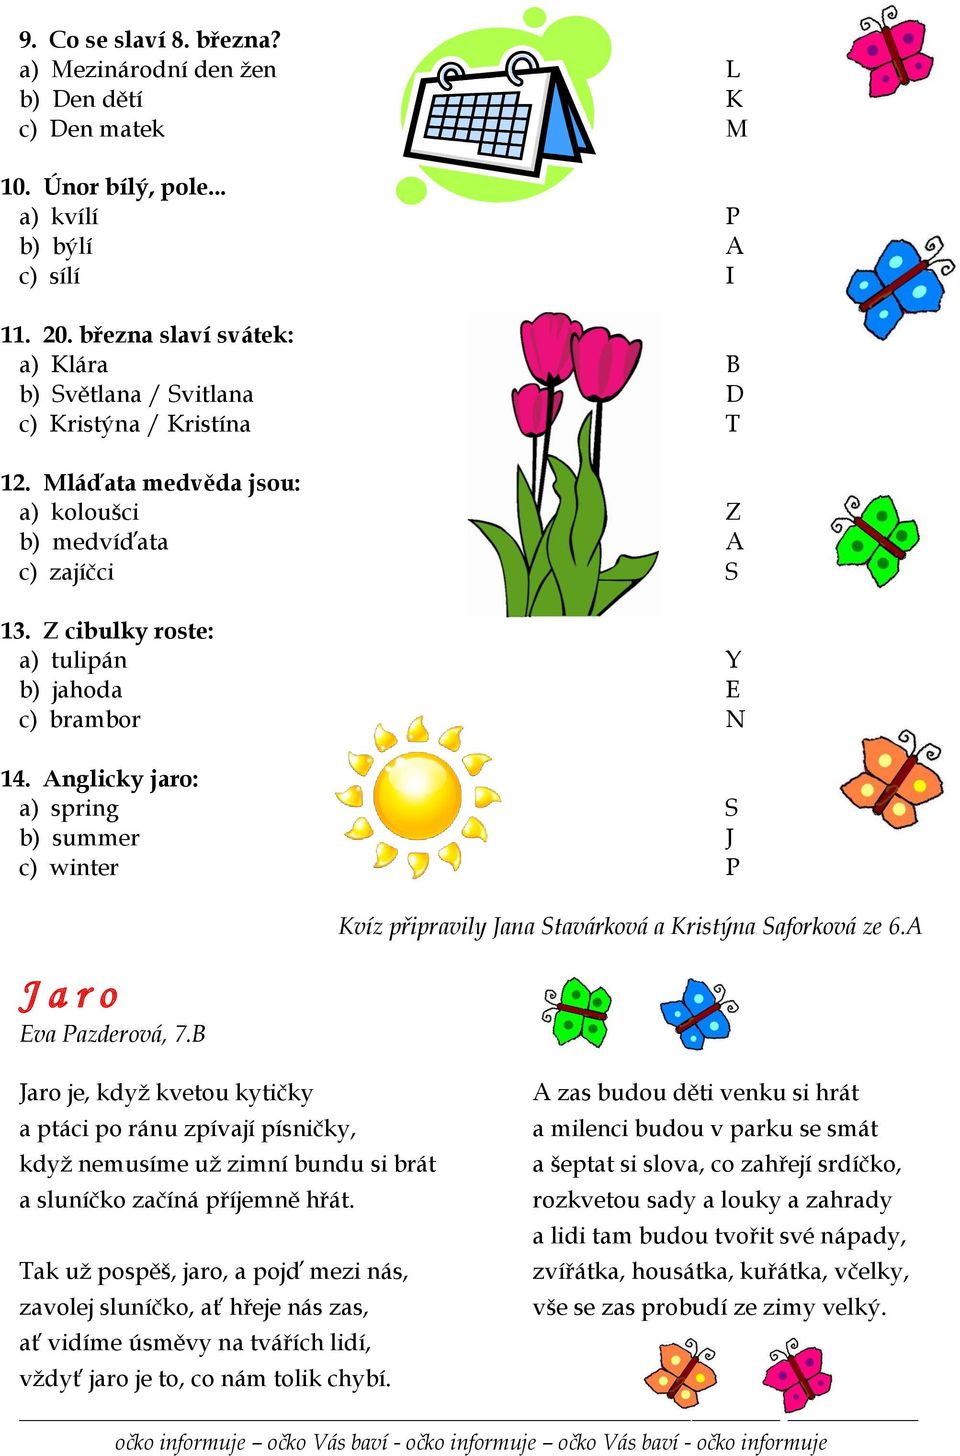 Z cibulky roste: a) tulipán Y b) jahoda E c) brambor N 14. Anglicky jaro: a) spring S b) summer J c) winter P J a r o Eva Pazderová, 7.